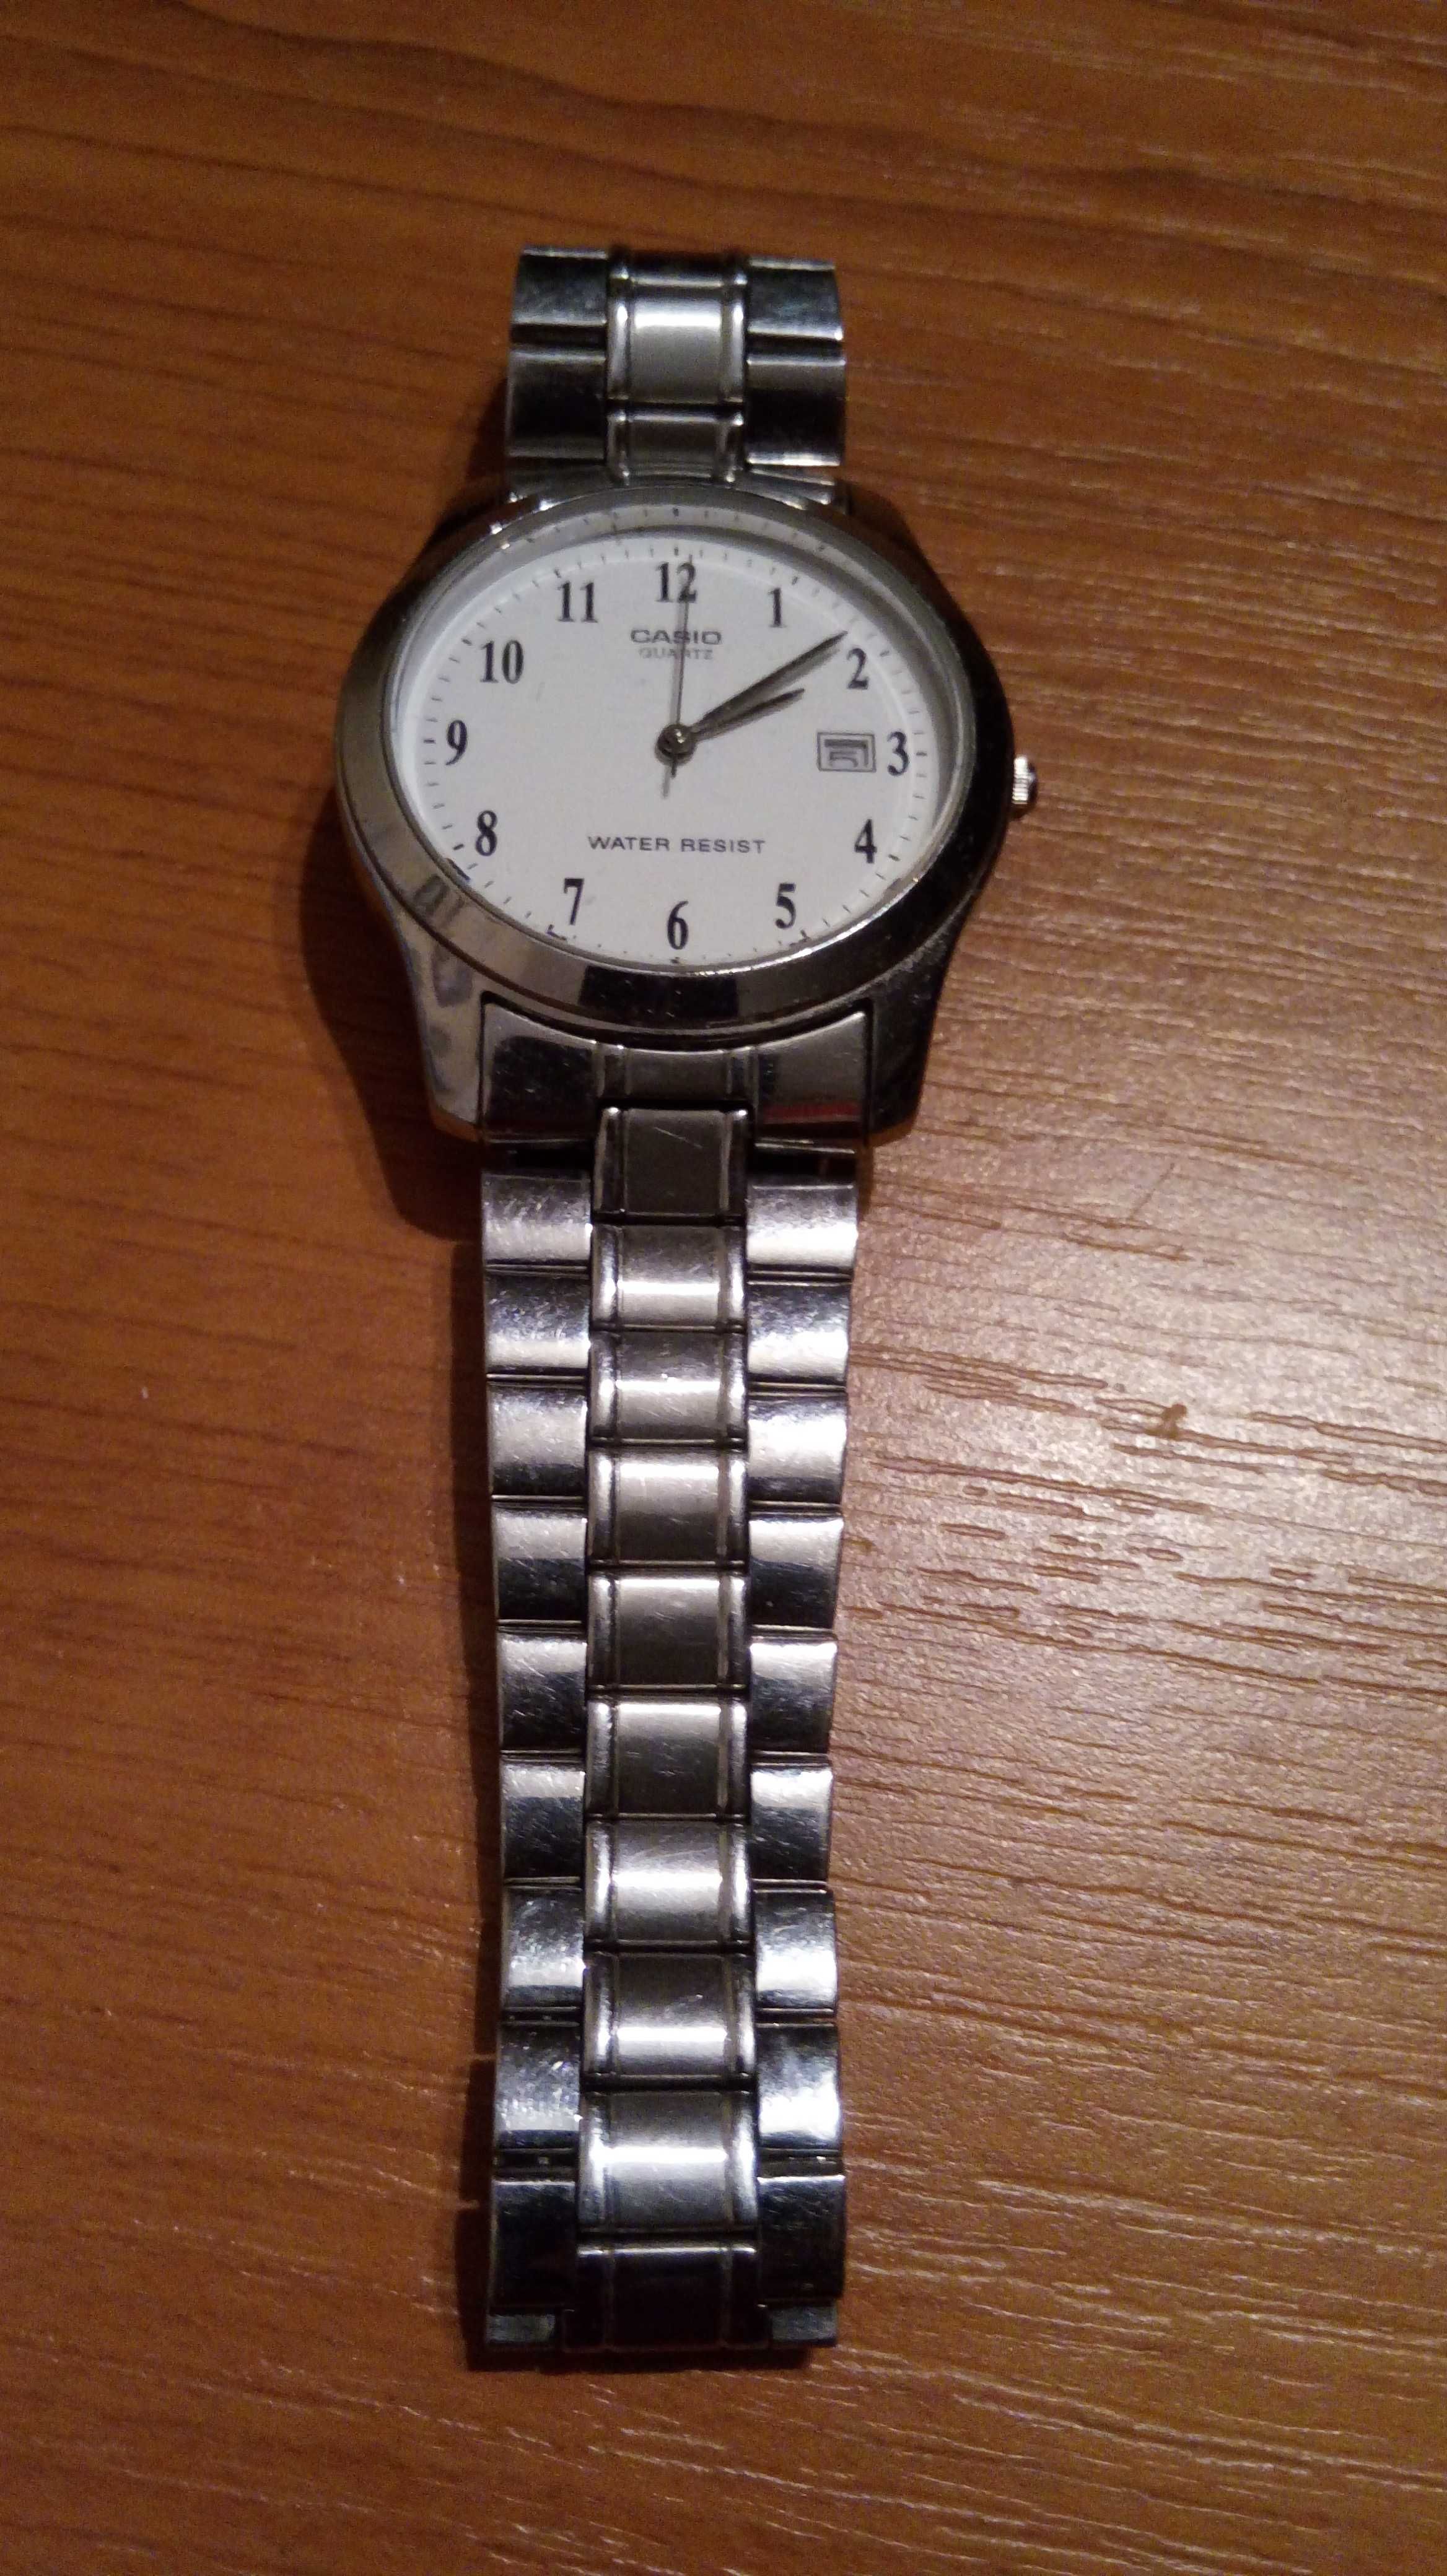 Zegarek Casio Quartz MTP-1141 z datownikiem i metalową bransoletą